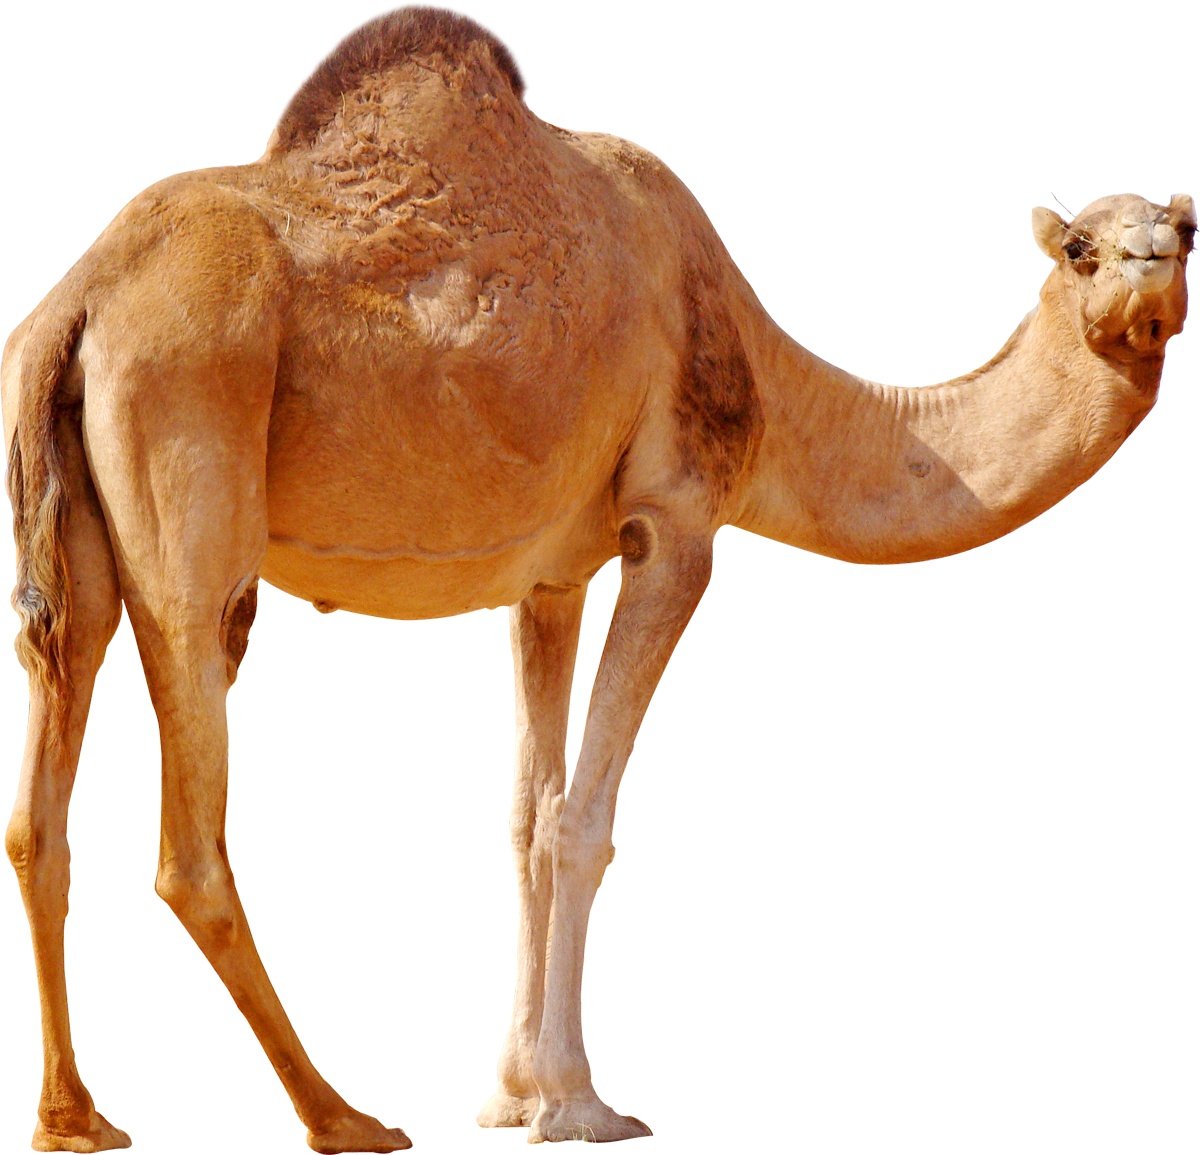 camel image sanskrit